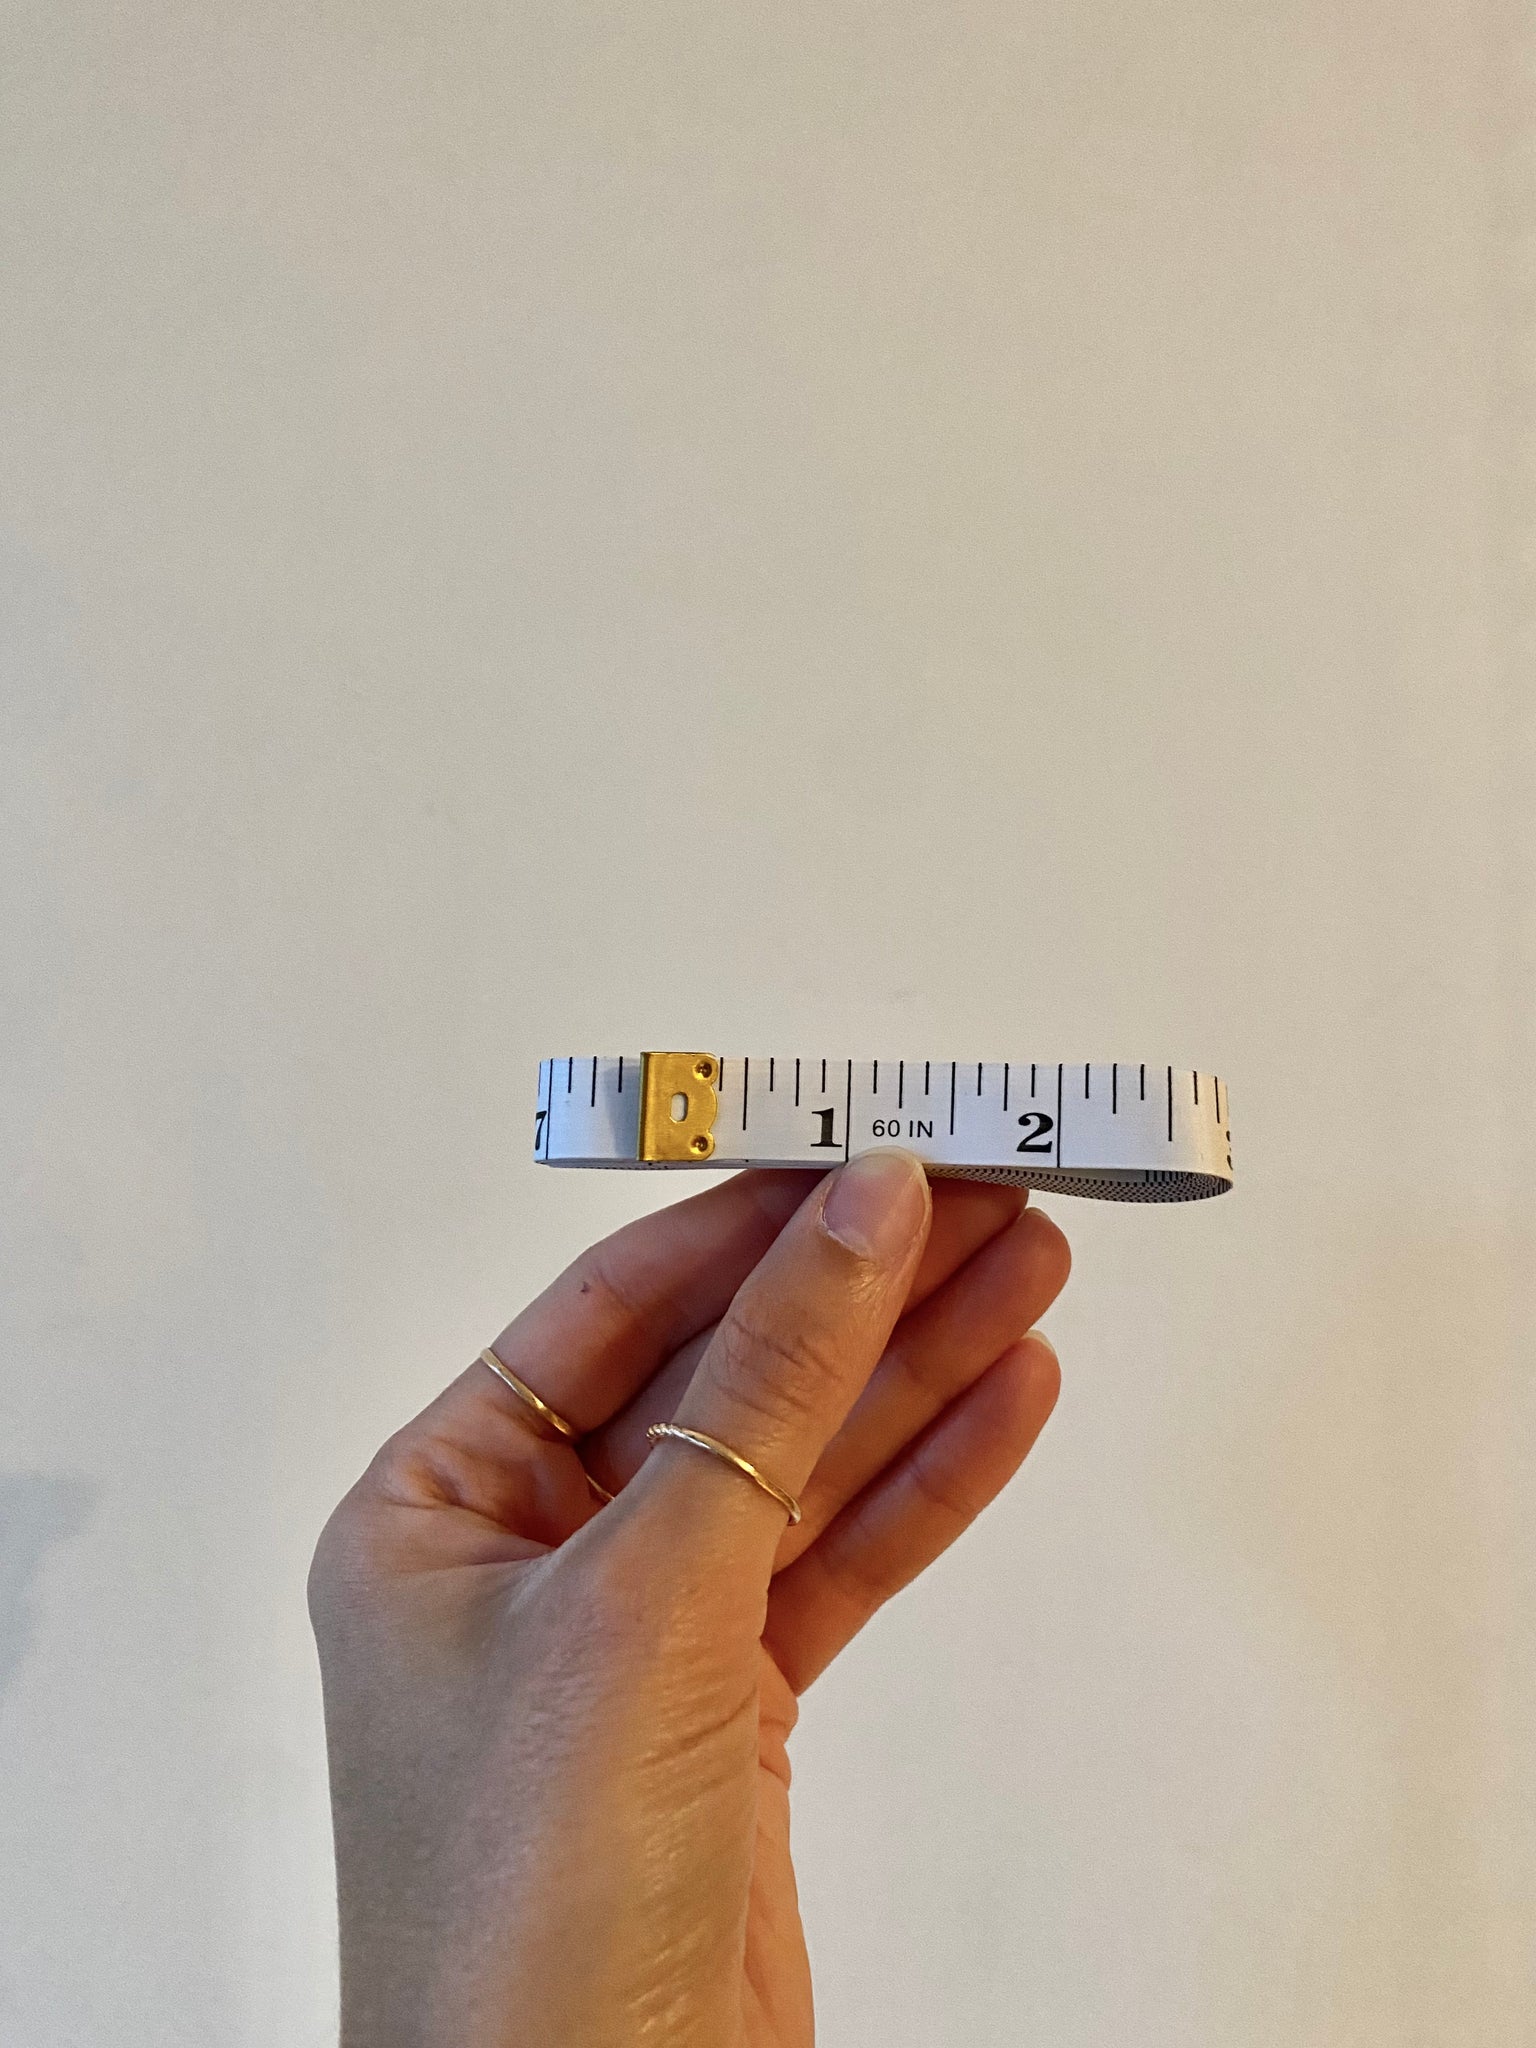 Body measuring tape